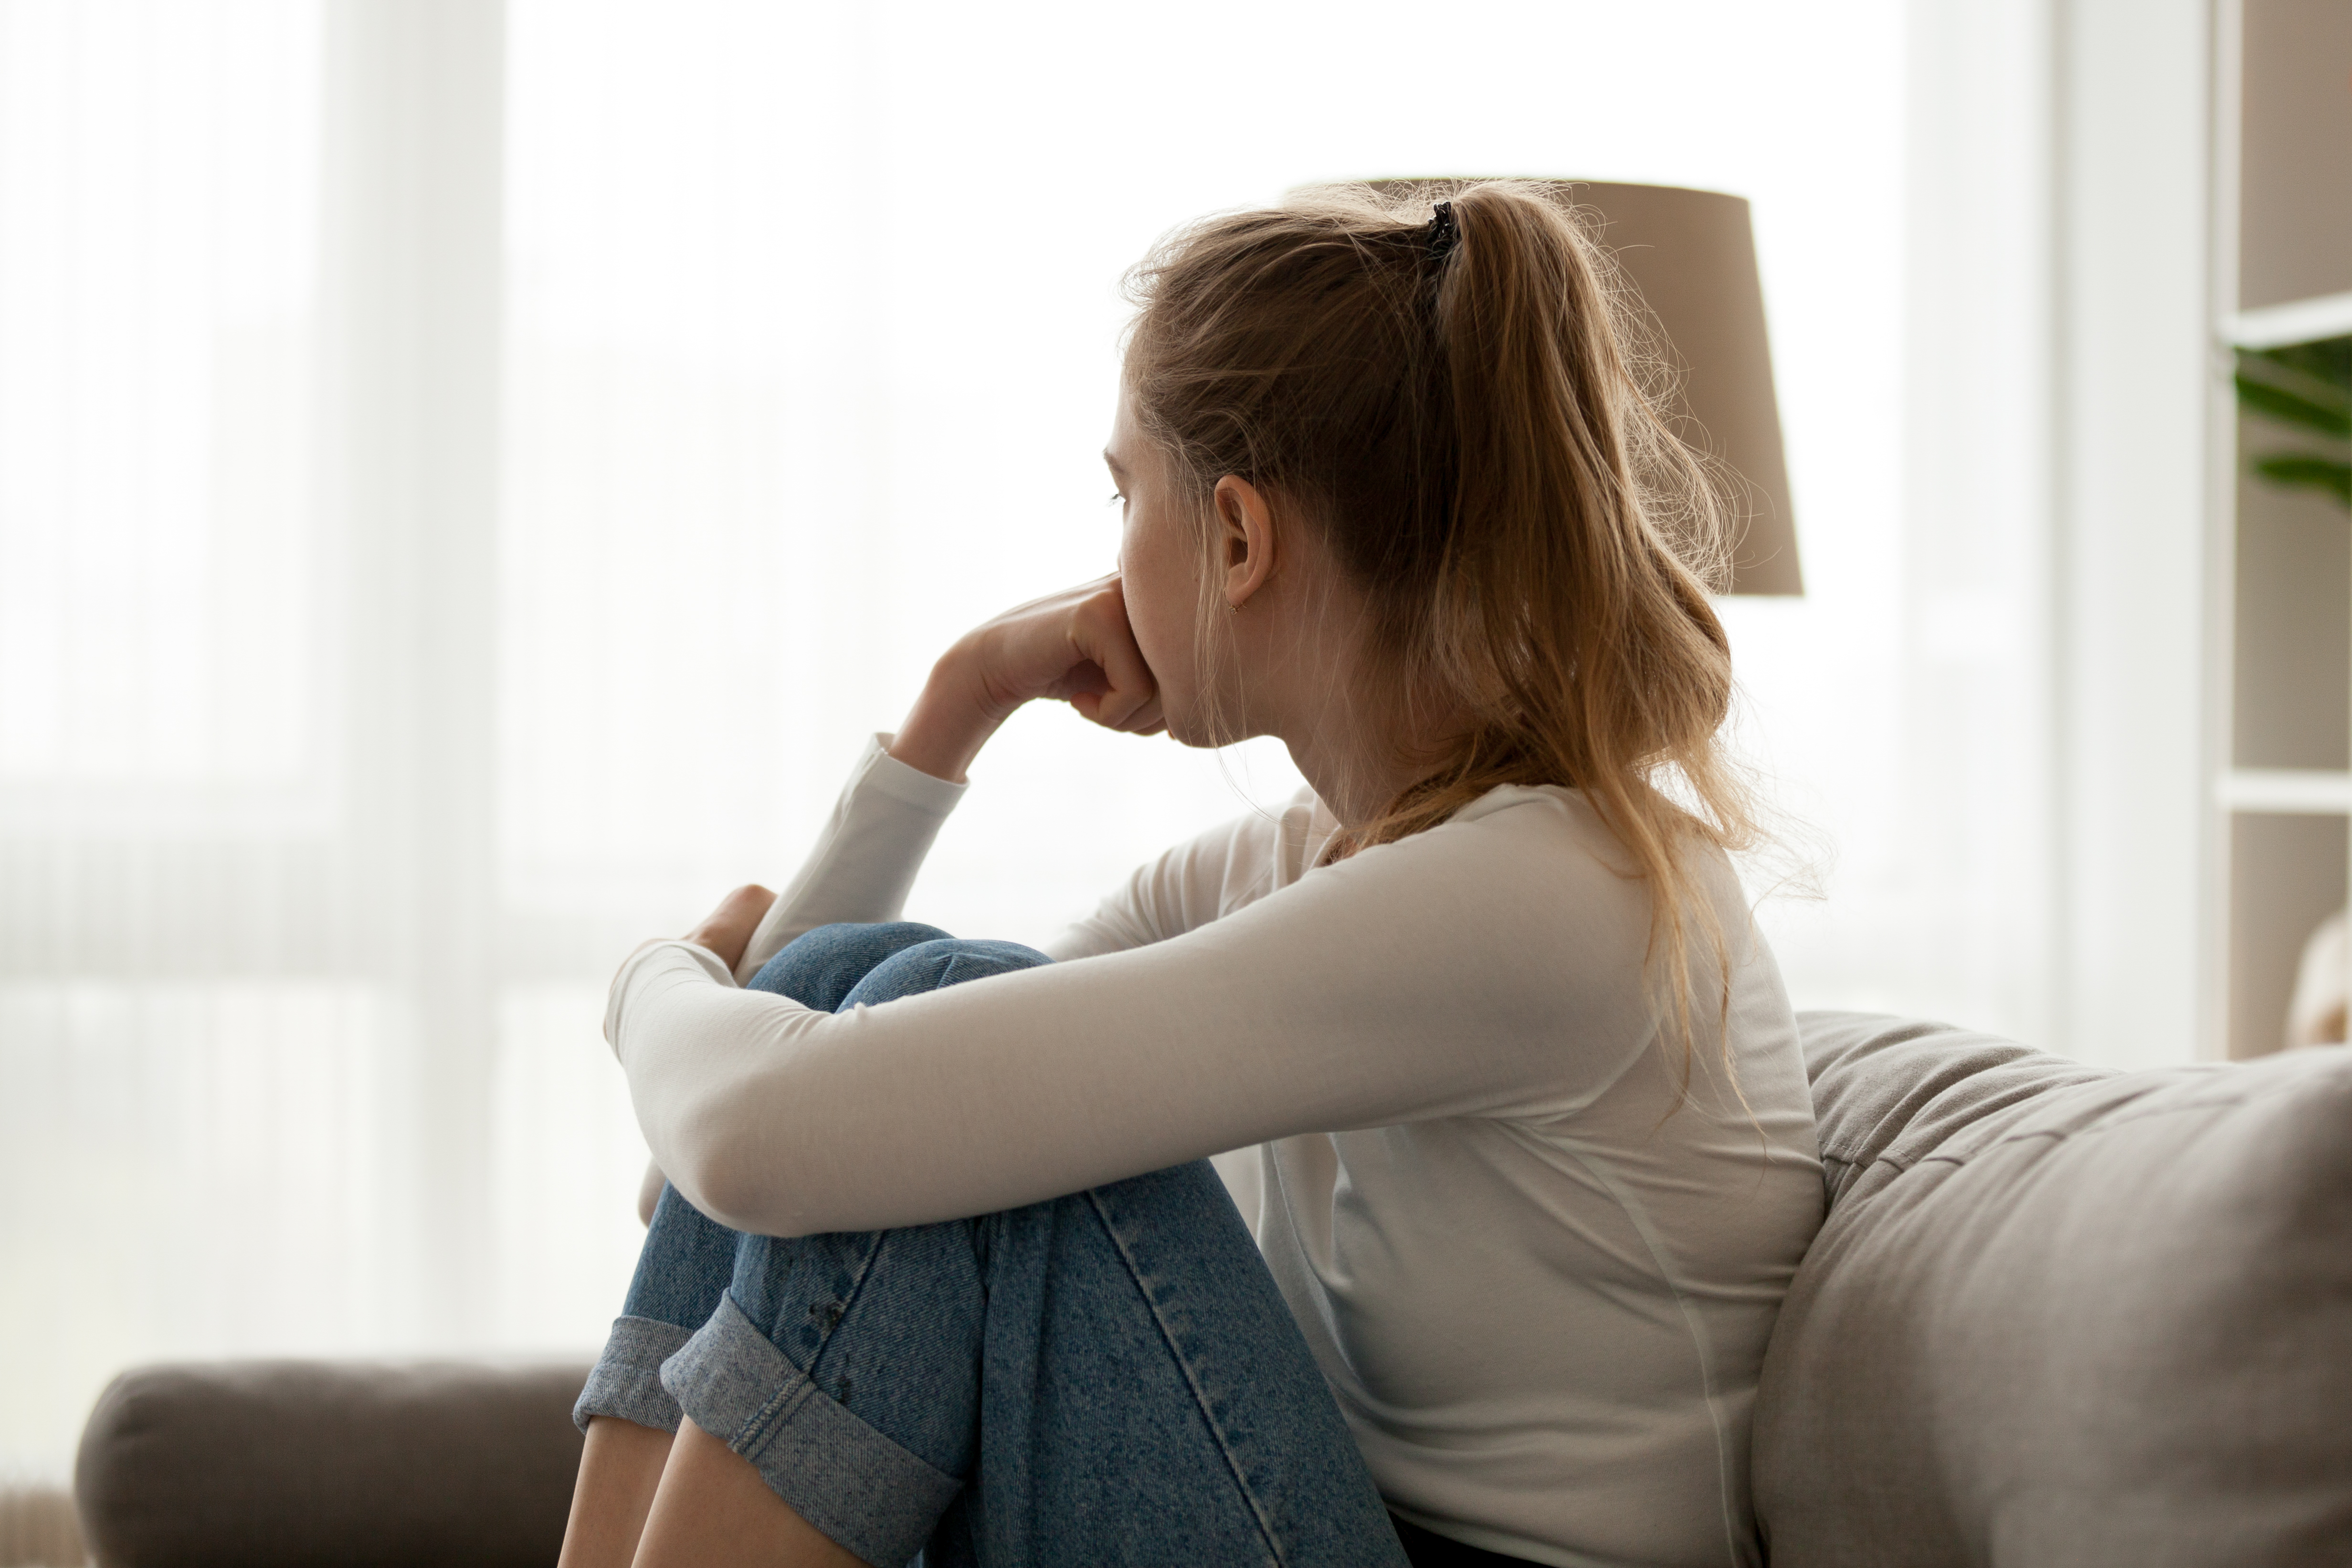 Uma menina sentada em um sofá | Fonte: Shutterstock